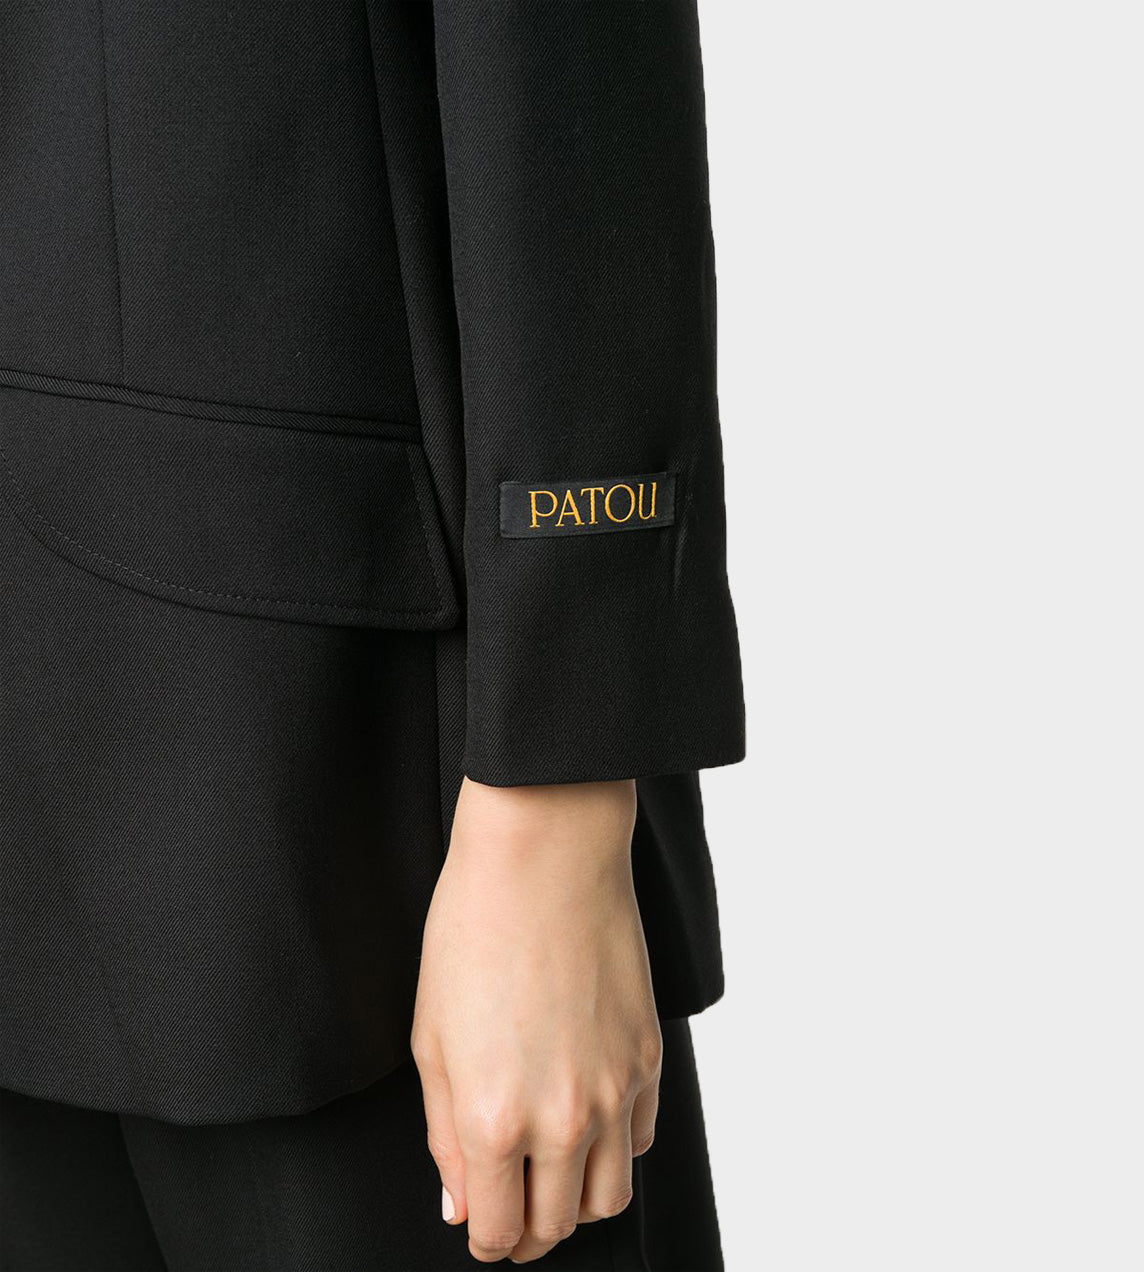 Patou - Iconic Jacket Black